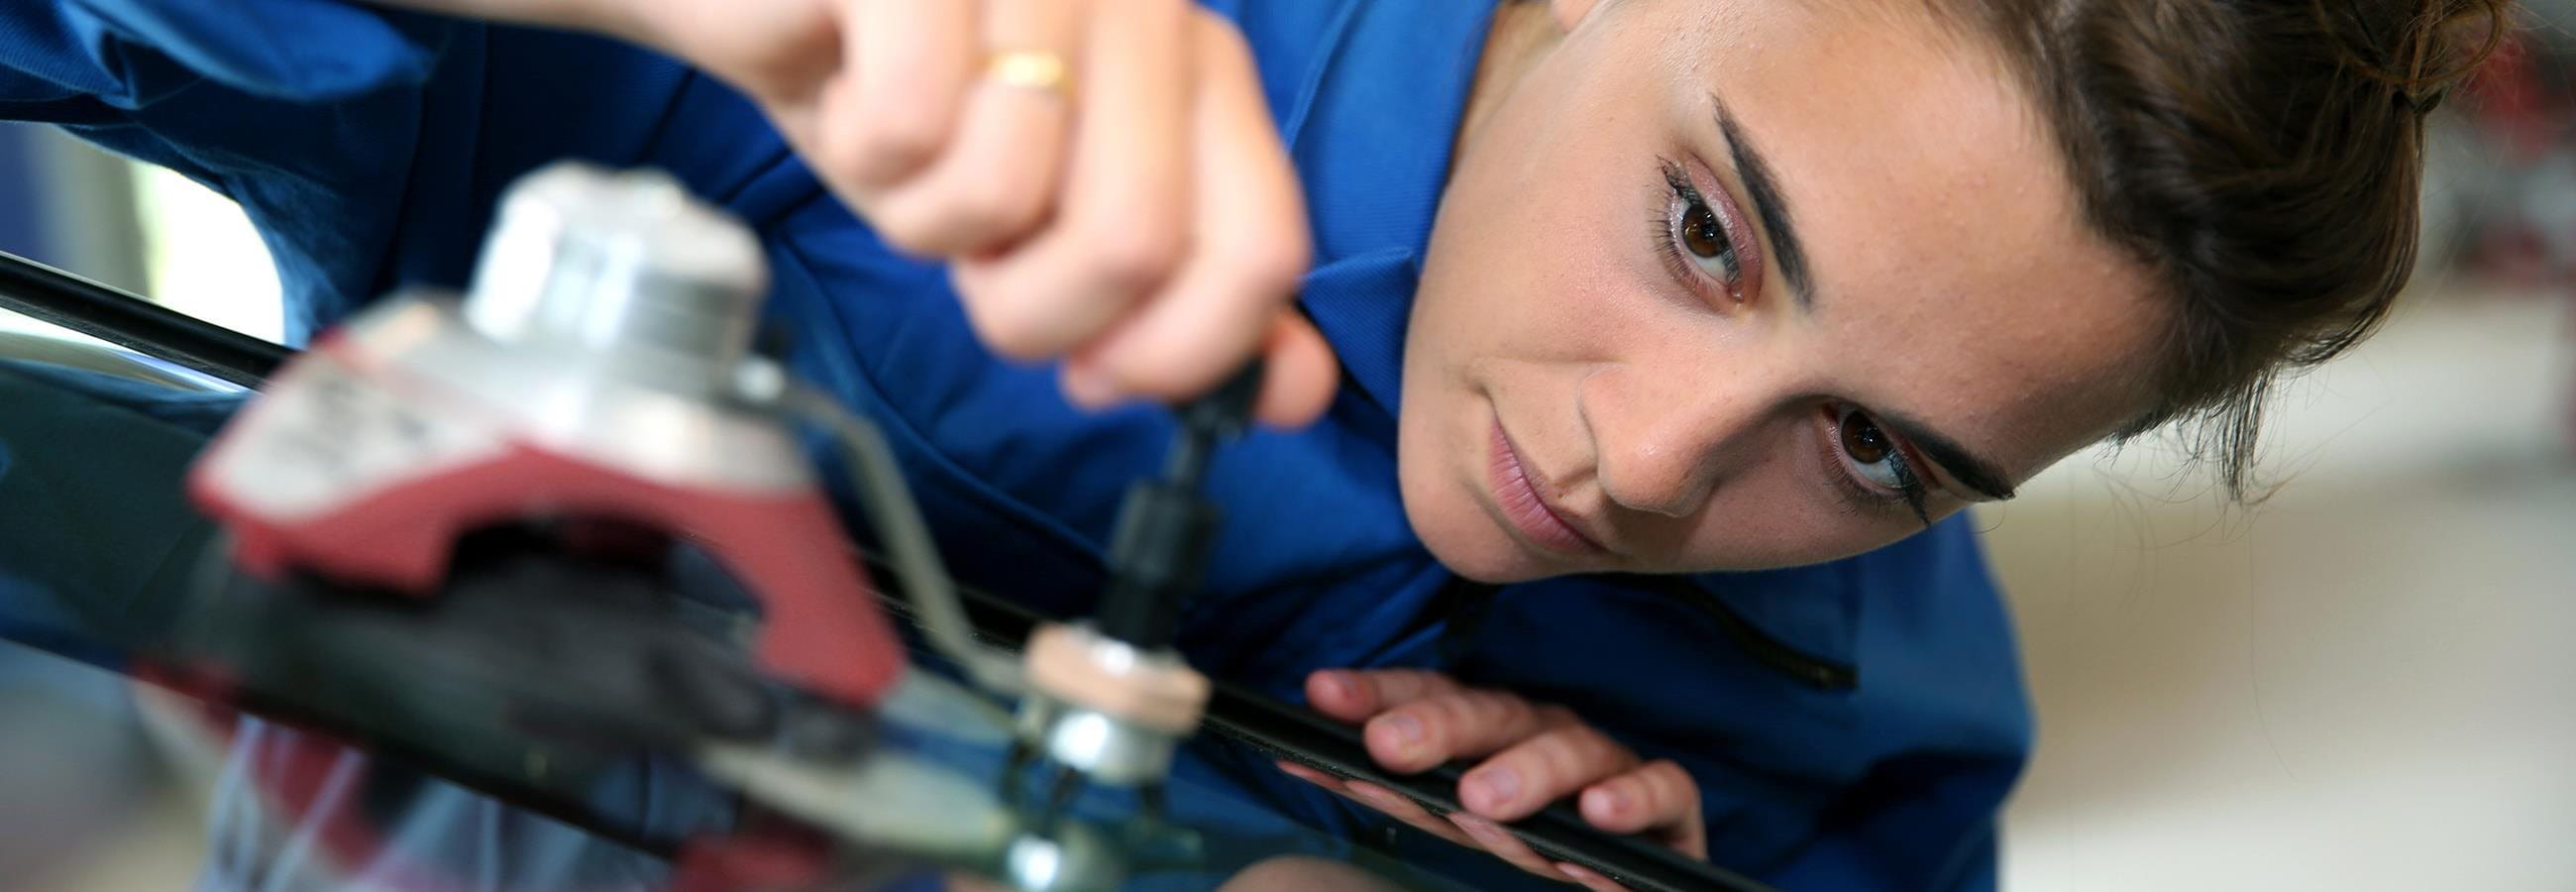 Frau repariert eine Glasscheibe